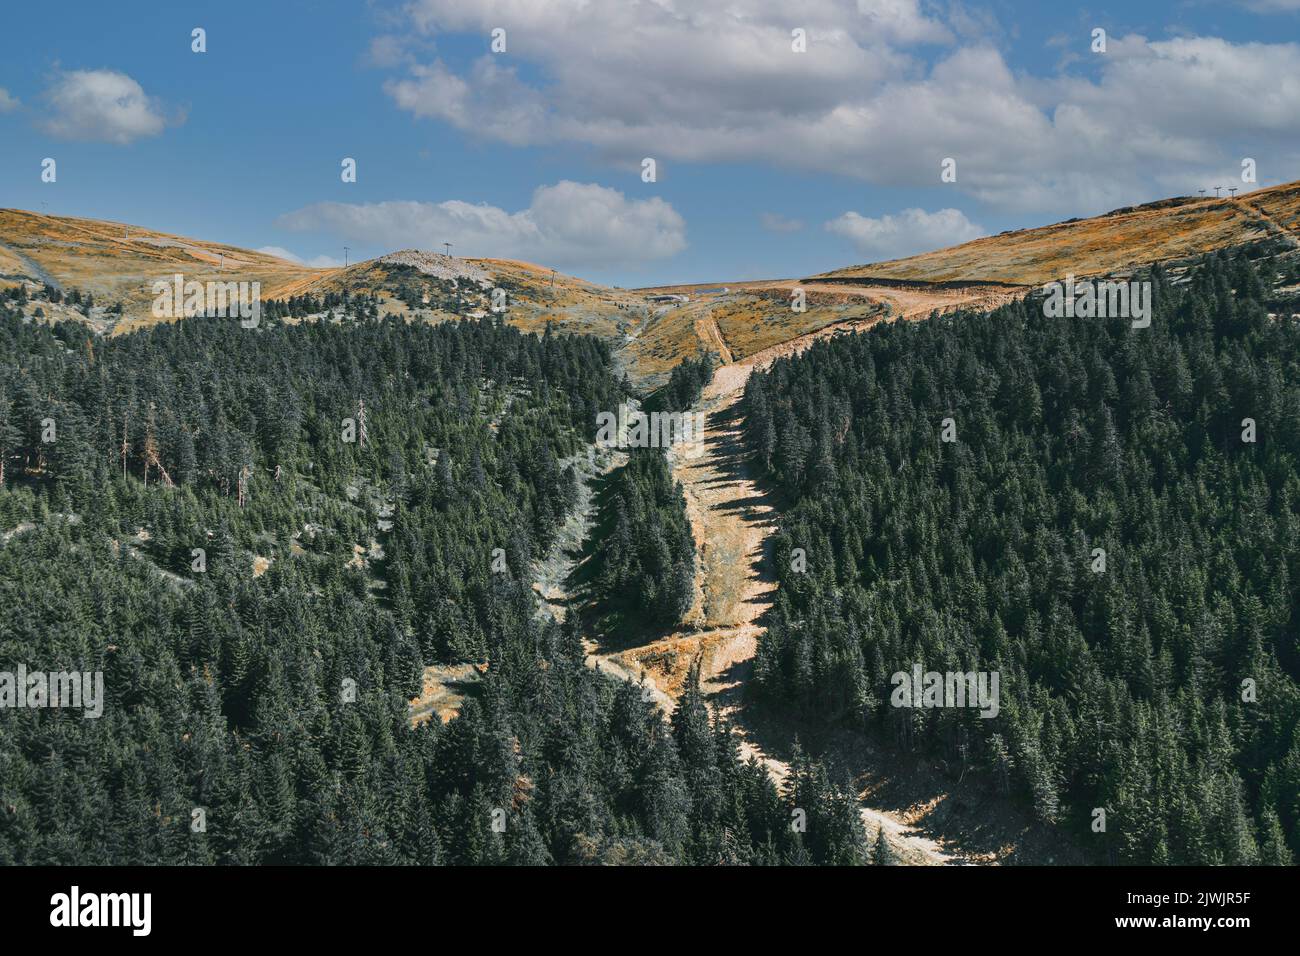 Luftlandschaftsansicht von hohen Gipfeln mit dunklen Kiefernwäldern in wilden Bergen.schöne Aussicht vom Wanderweg in den Karpaten. Stockfoto